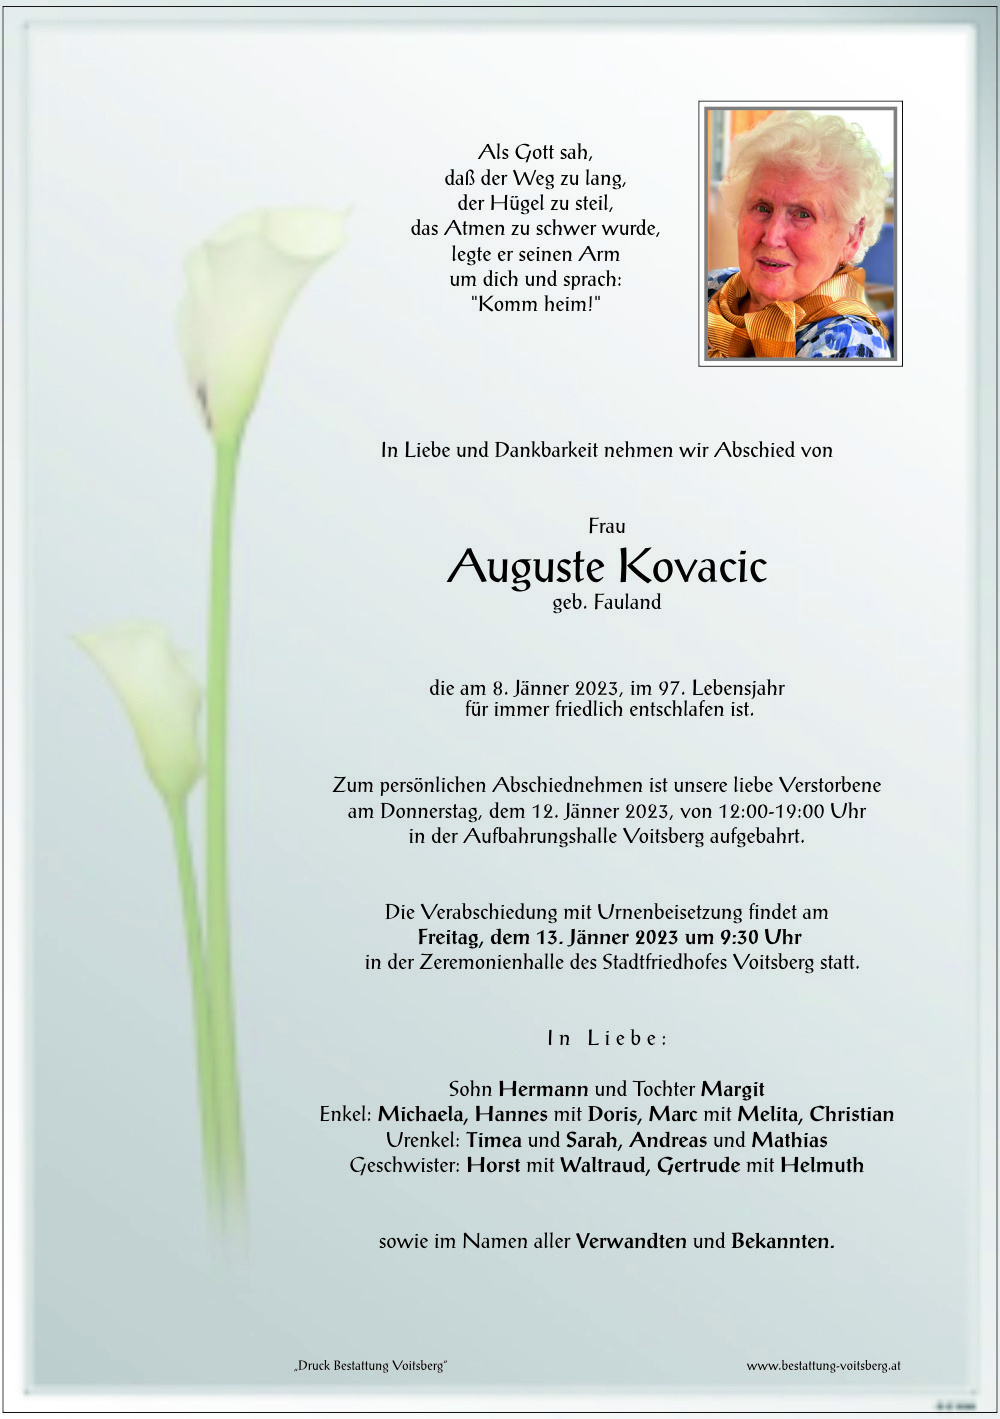 Auguste Kovacic